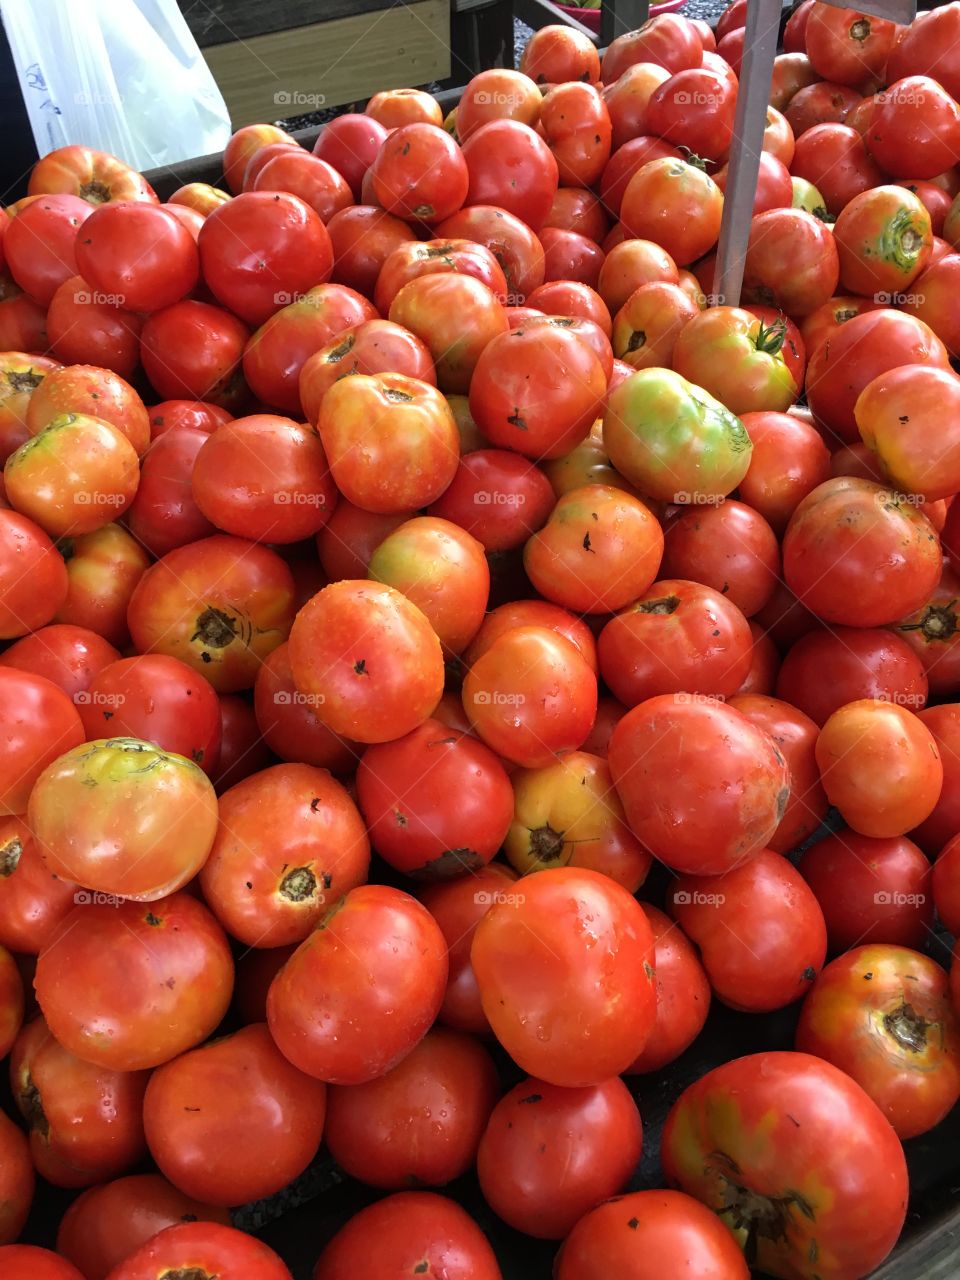 Tomato tomato 🍅